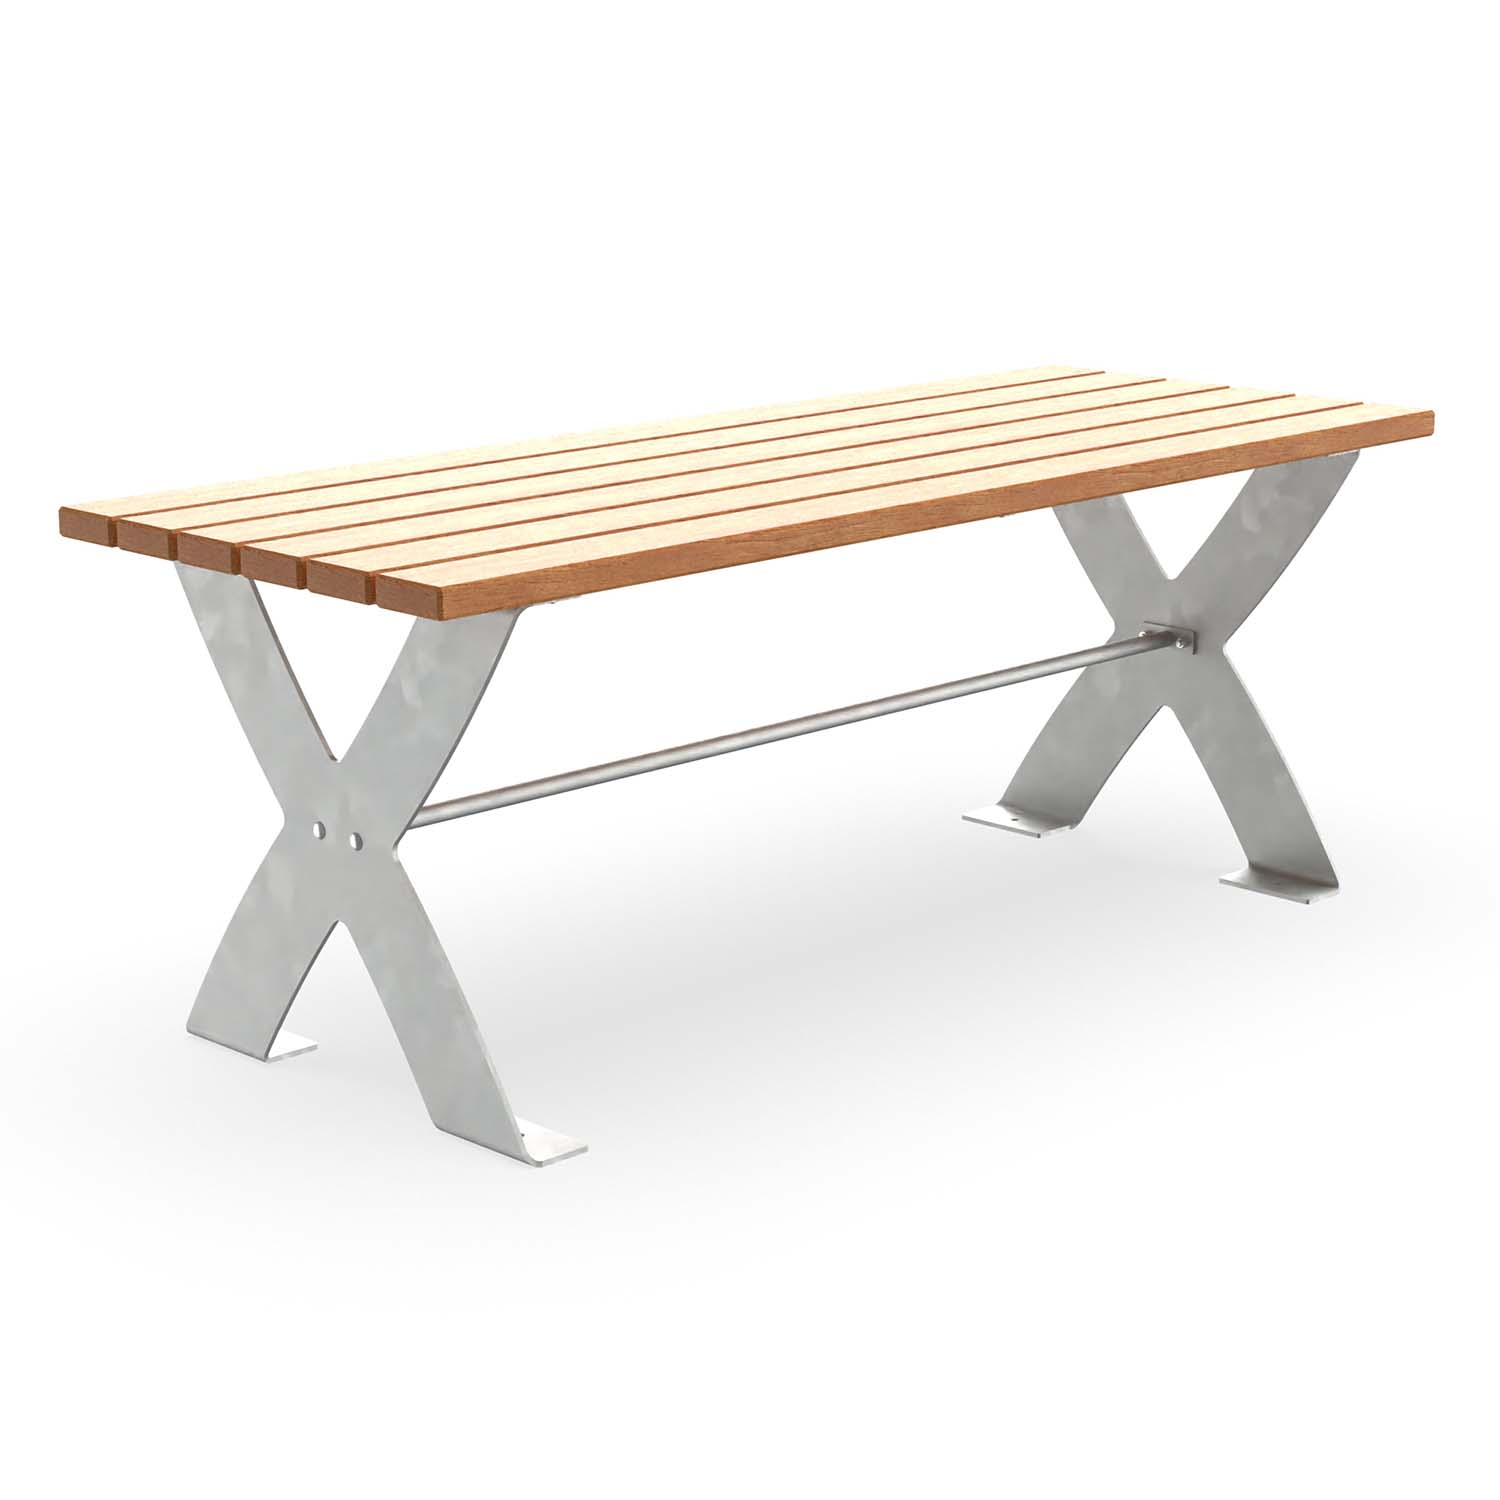 Tisch für Parkbank CERANA, Flachstahl, Tischfläche aus Holz, verzinkt